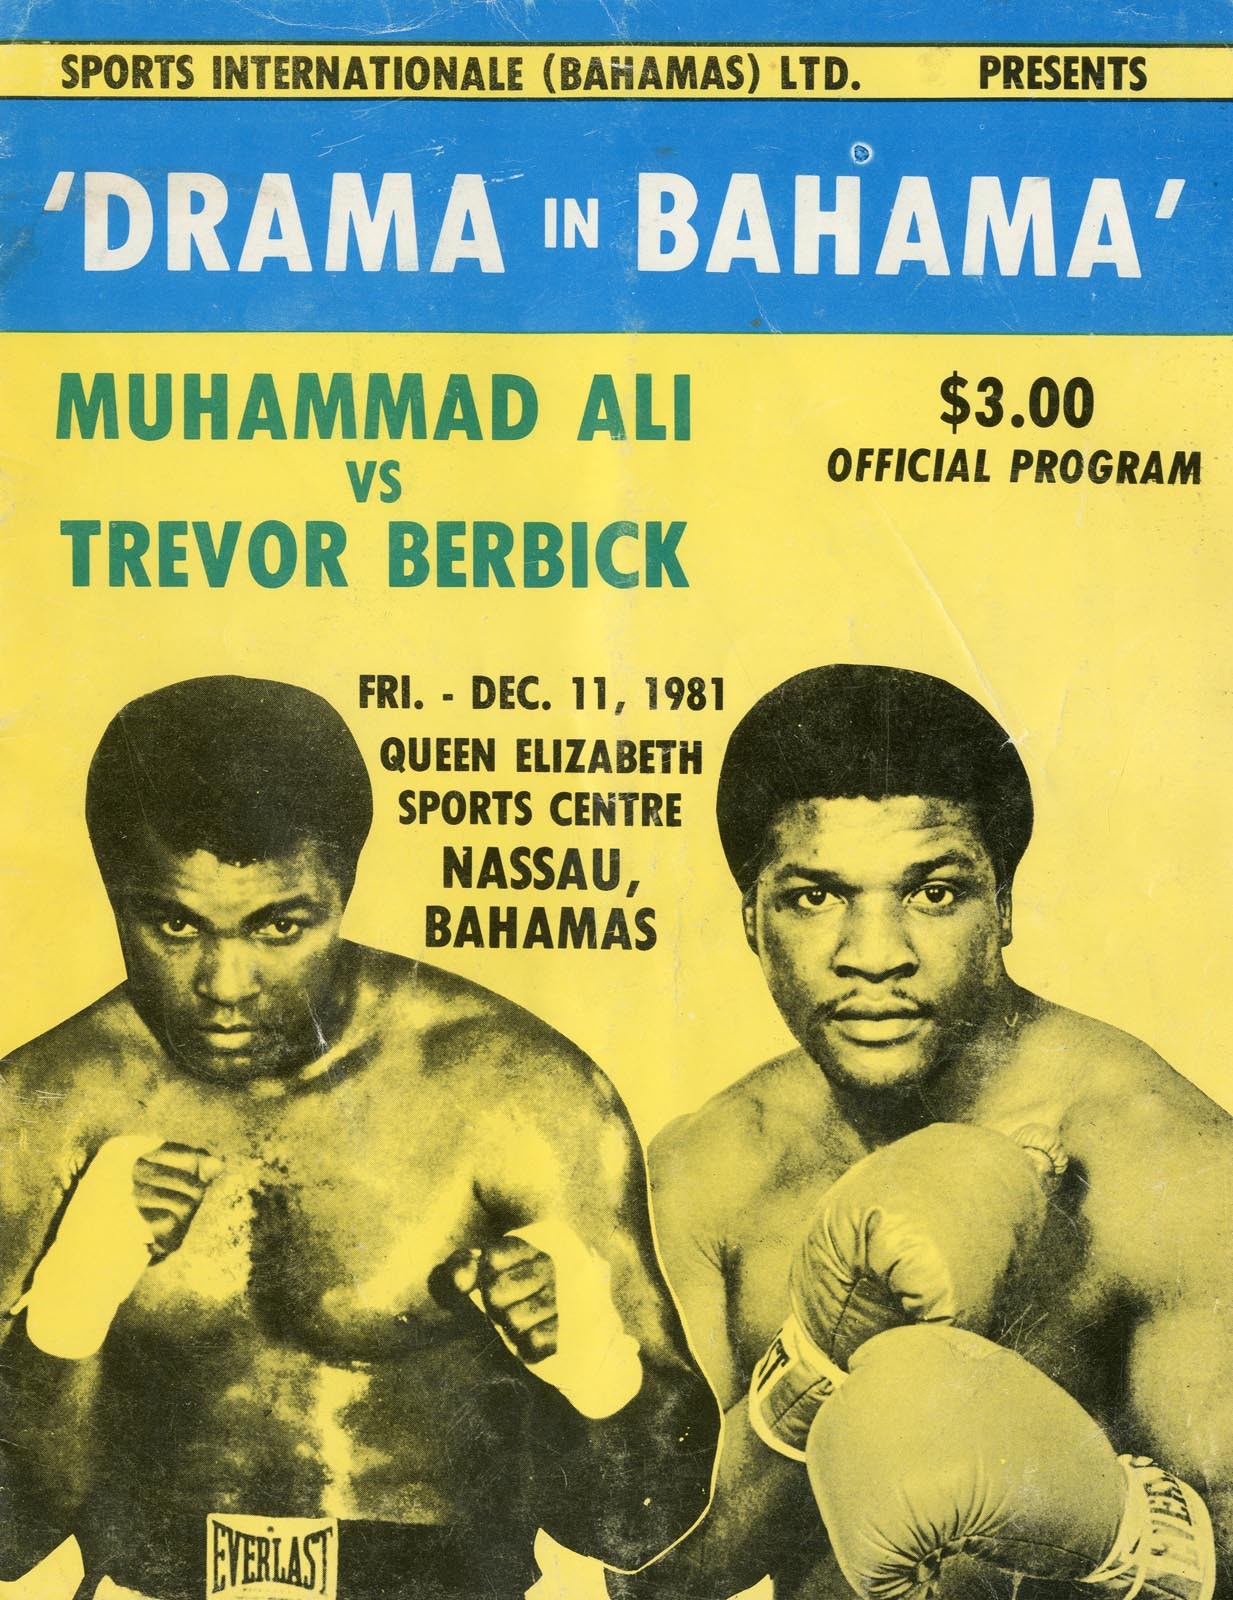 - 1981 Ali vs. Berbick "Drama in Bahama" On-Site Program